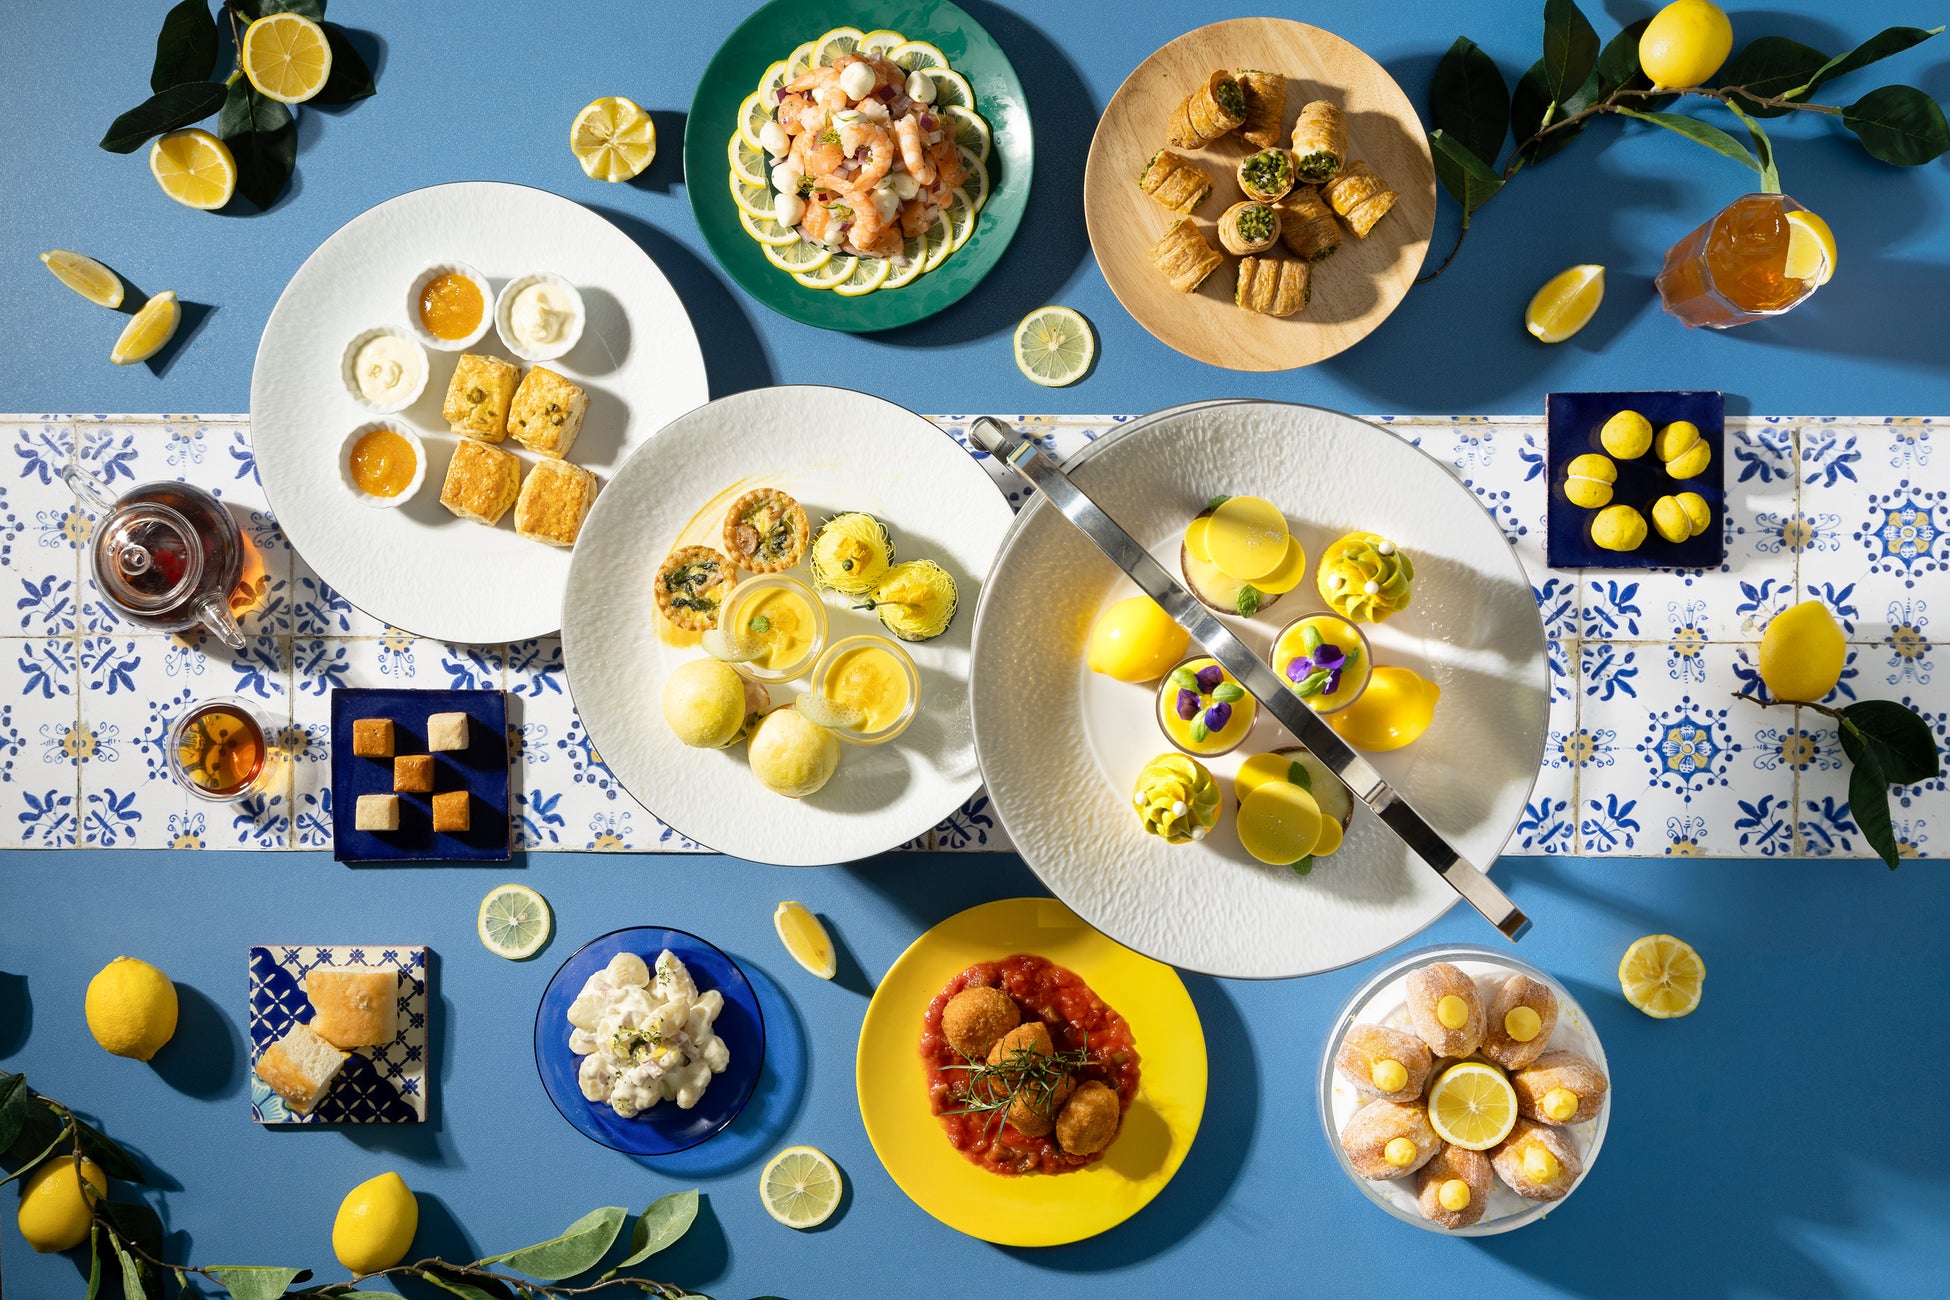 シチリアの海岸での爽やかな夏のバカンスをテーマに、夏のリトリートを楽しむレモンアフタヌーンティー＆ブッフェ「Lemon Breeze of Sicily」。ひんやりイタリアンスイーツもラインナップ